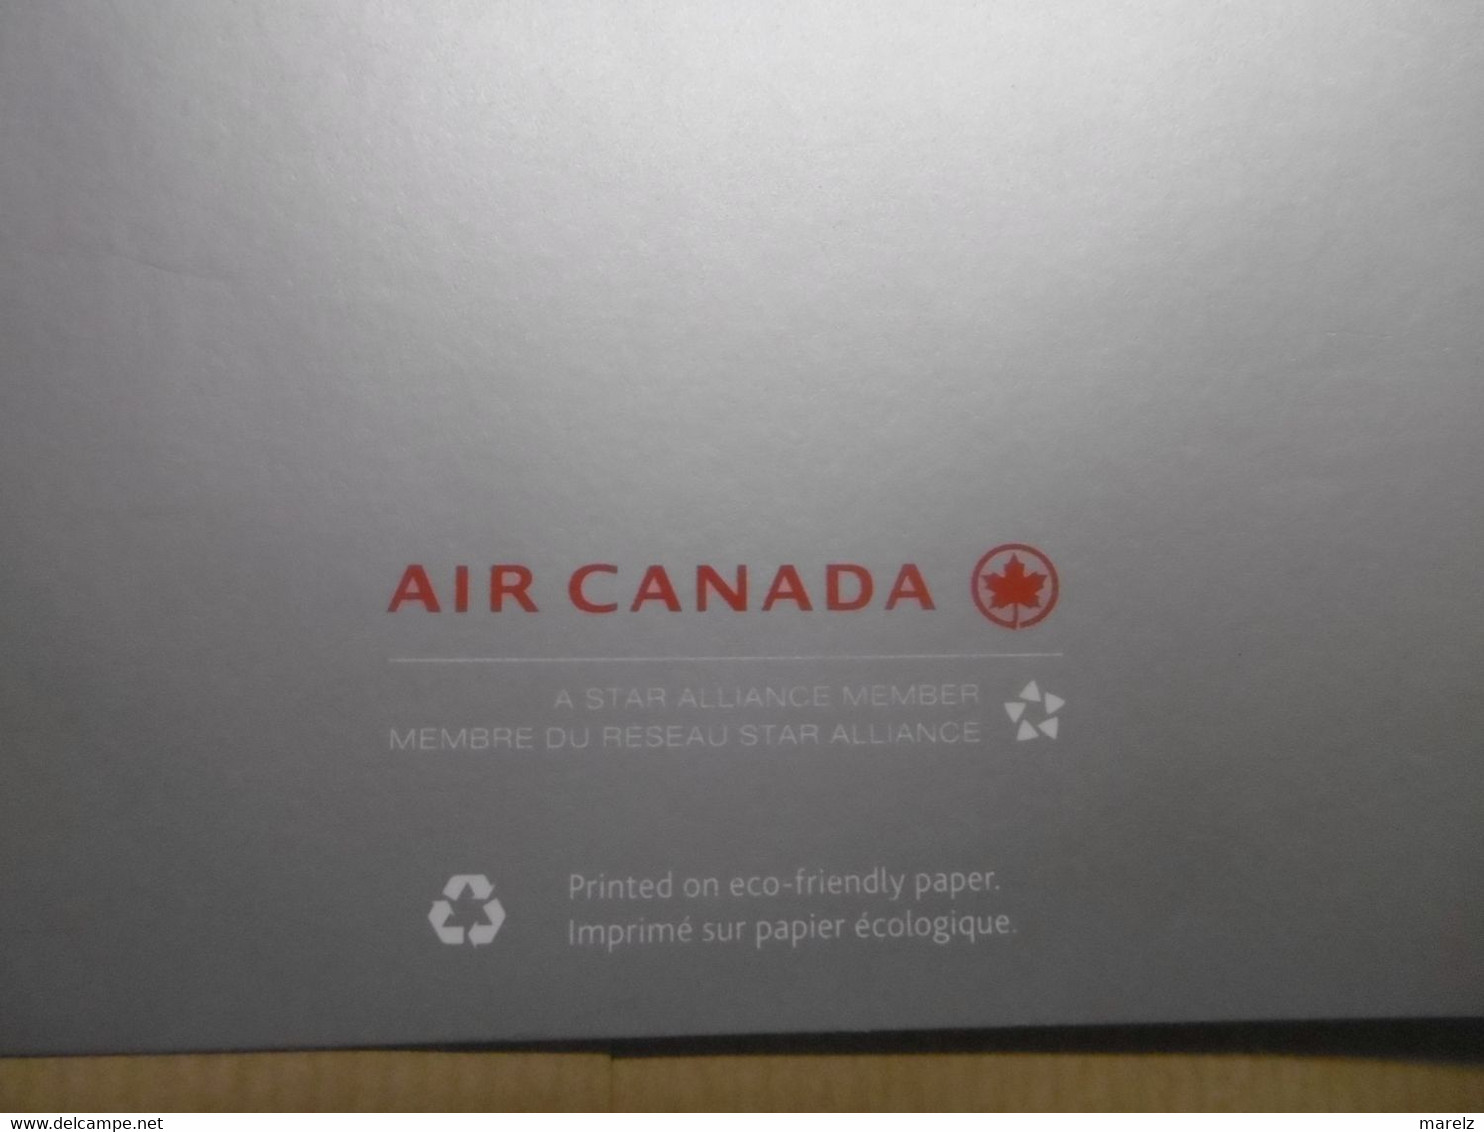 Compagnie aérienne AIR CANADA Menu et Carte des Vins Business Class Classe Affaires